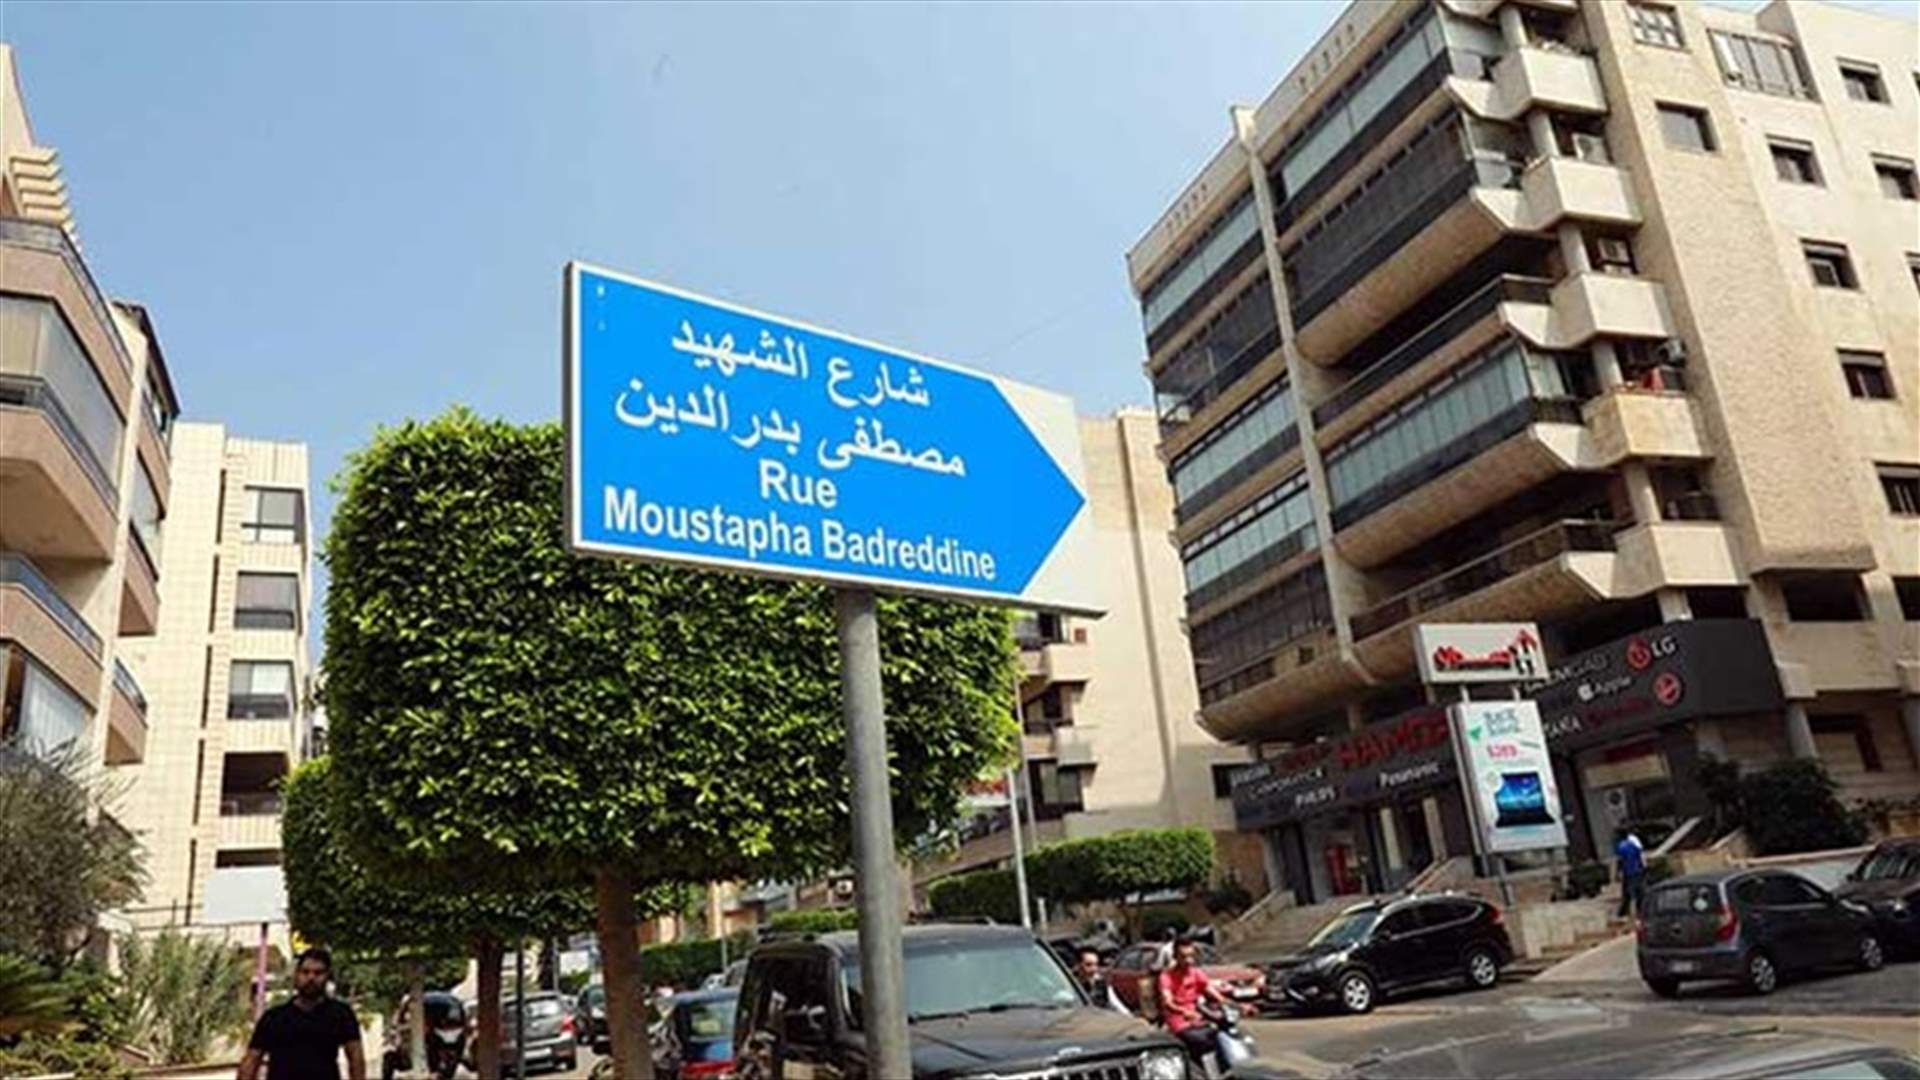 مصادر &quot;الداخلية&quot; لـ&quot;الشرق الاوسط&quot;: توقيت تسمية شارع مصطفى بدر الدين استفزازي